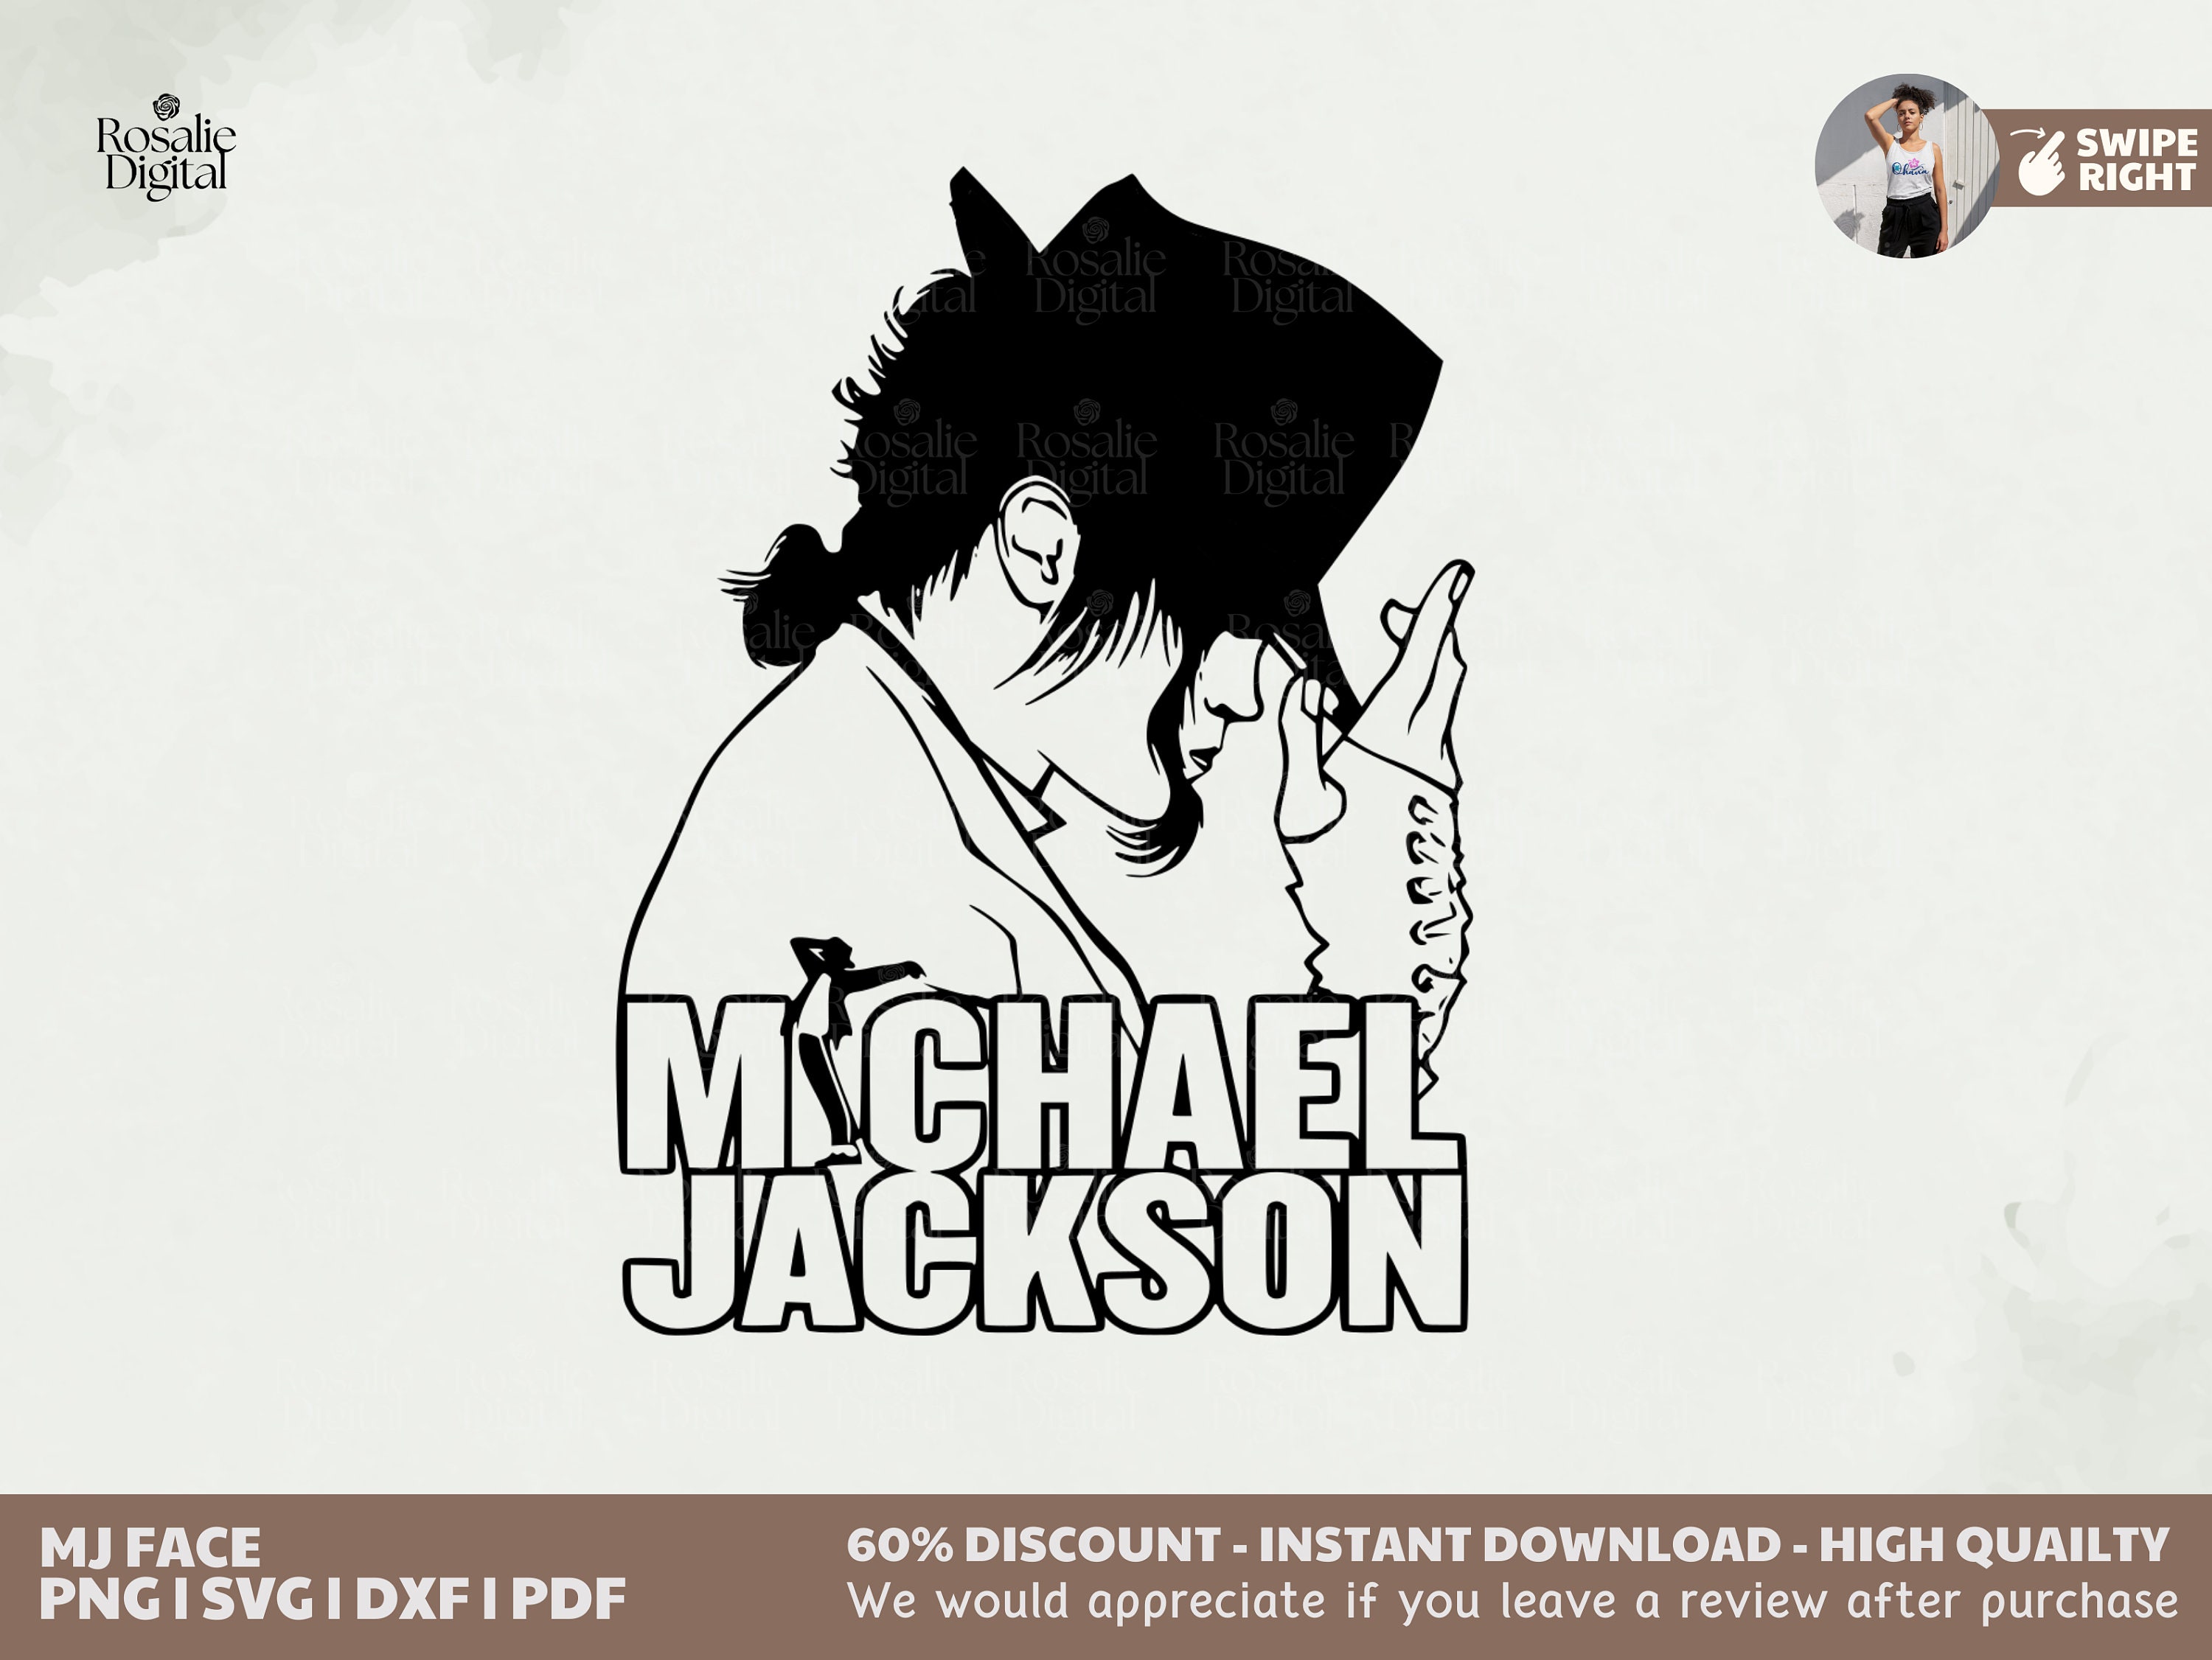 Vinilo Decorativo Michael Jackson - Tienda dipe  Michael jackson  silhouette, Michael jackson art, Michael jackson drawings